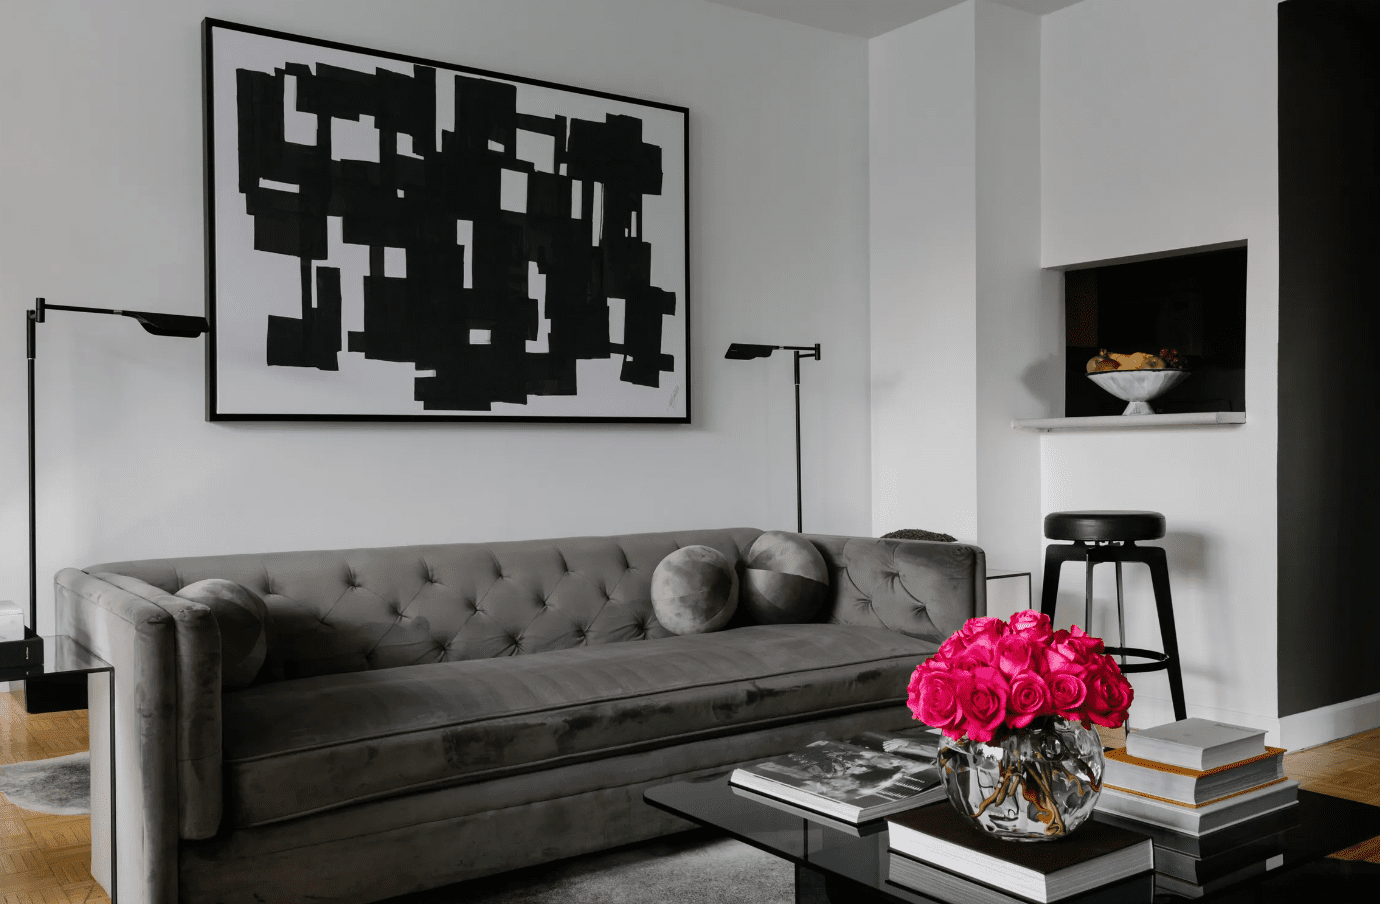 grau-schwarz-weißes Wohnzimmer mit hellen Rosen in einer Vase